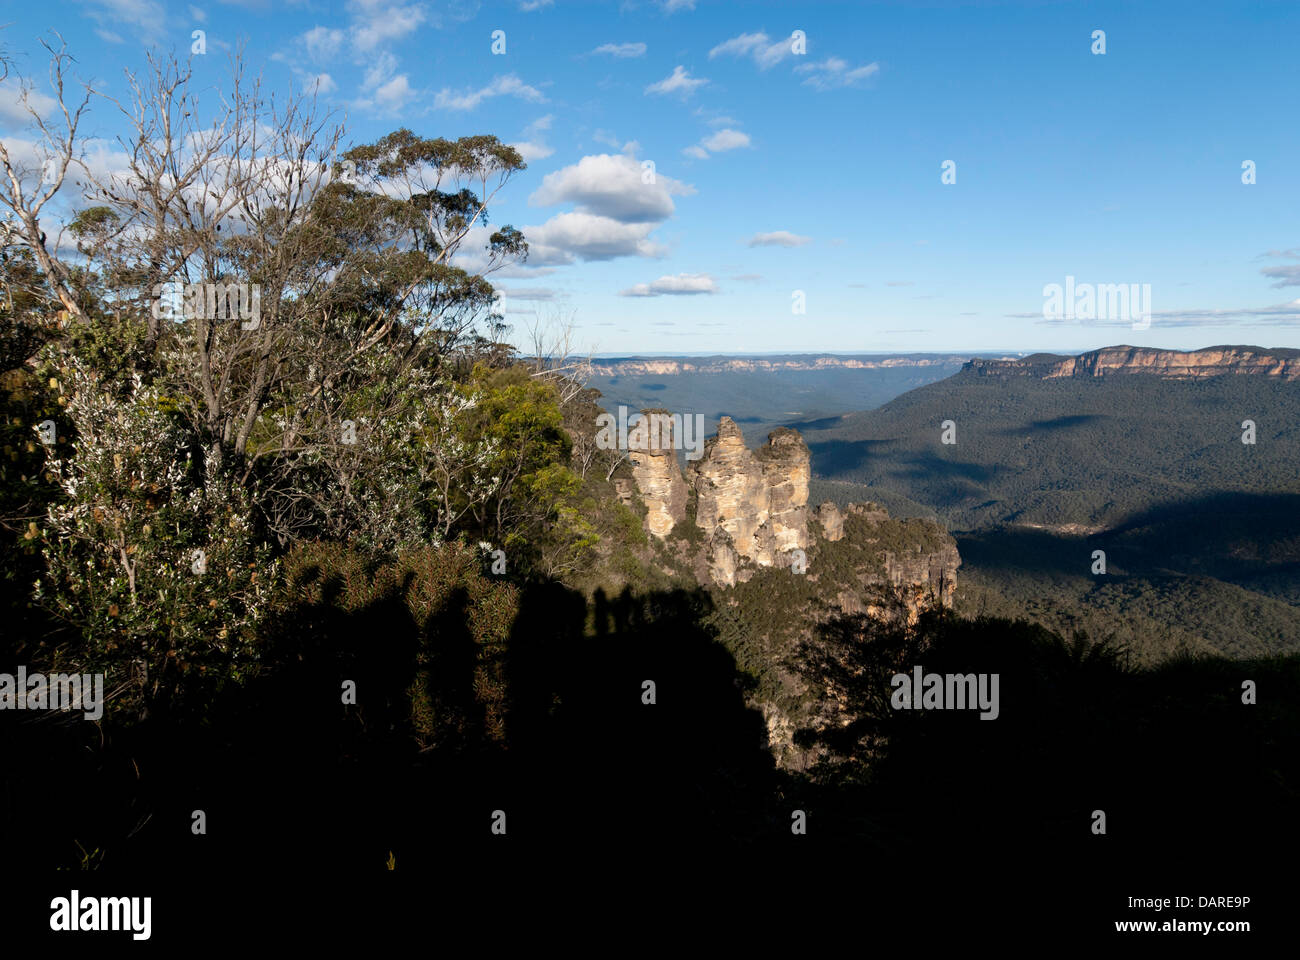 La formación rocosa Three Sisters en Echo Point, con la sombra de visitantes en la plataforma de visualización Foto de stock